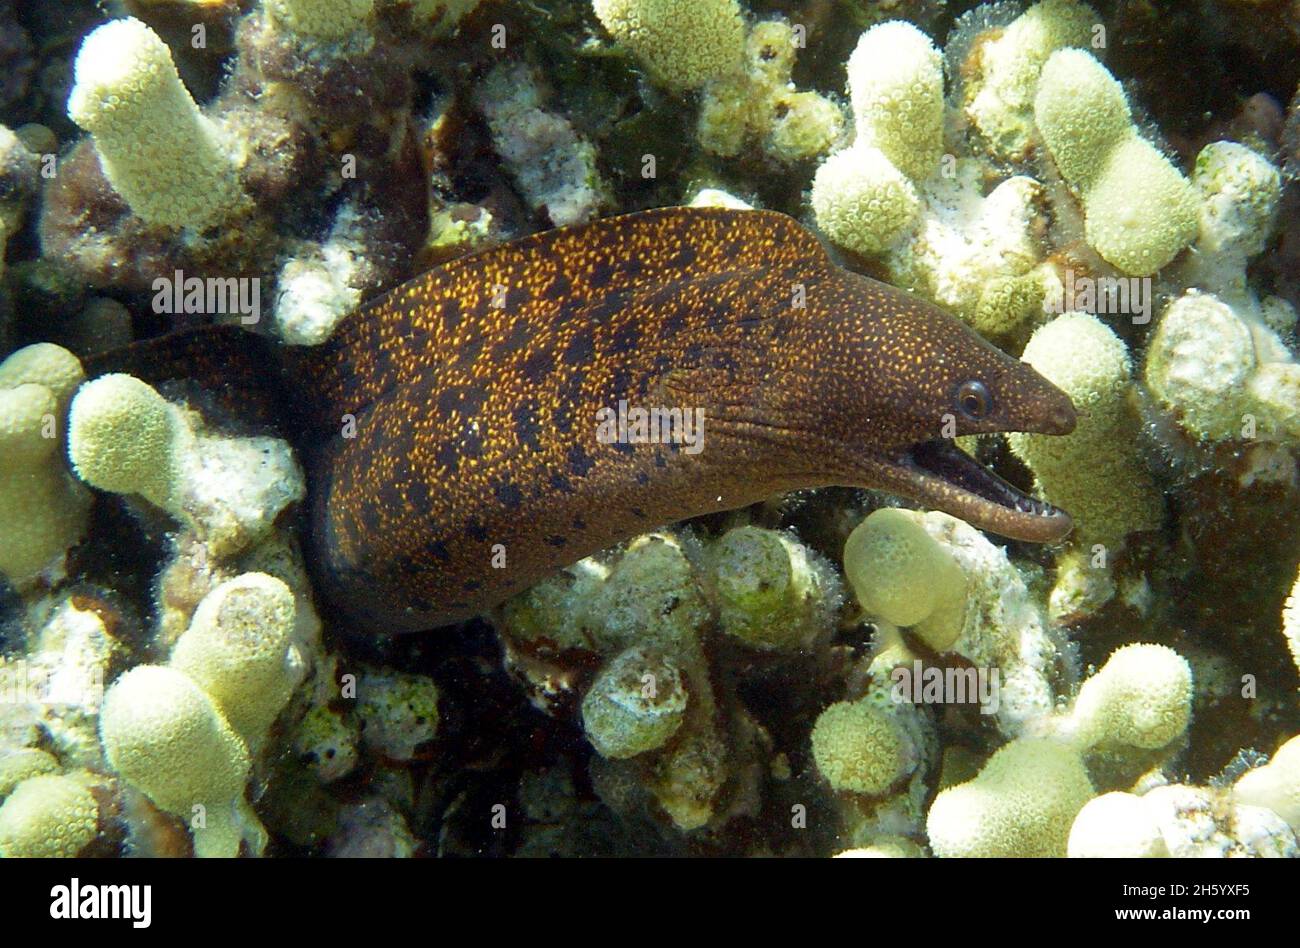 A stout moray eel (Gymnothorax eurostus) Stock Photo